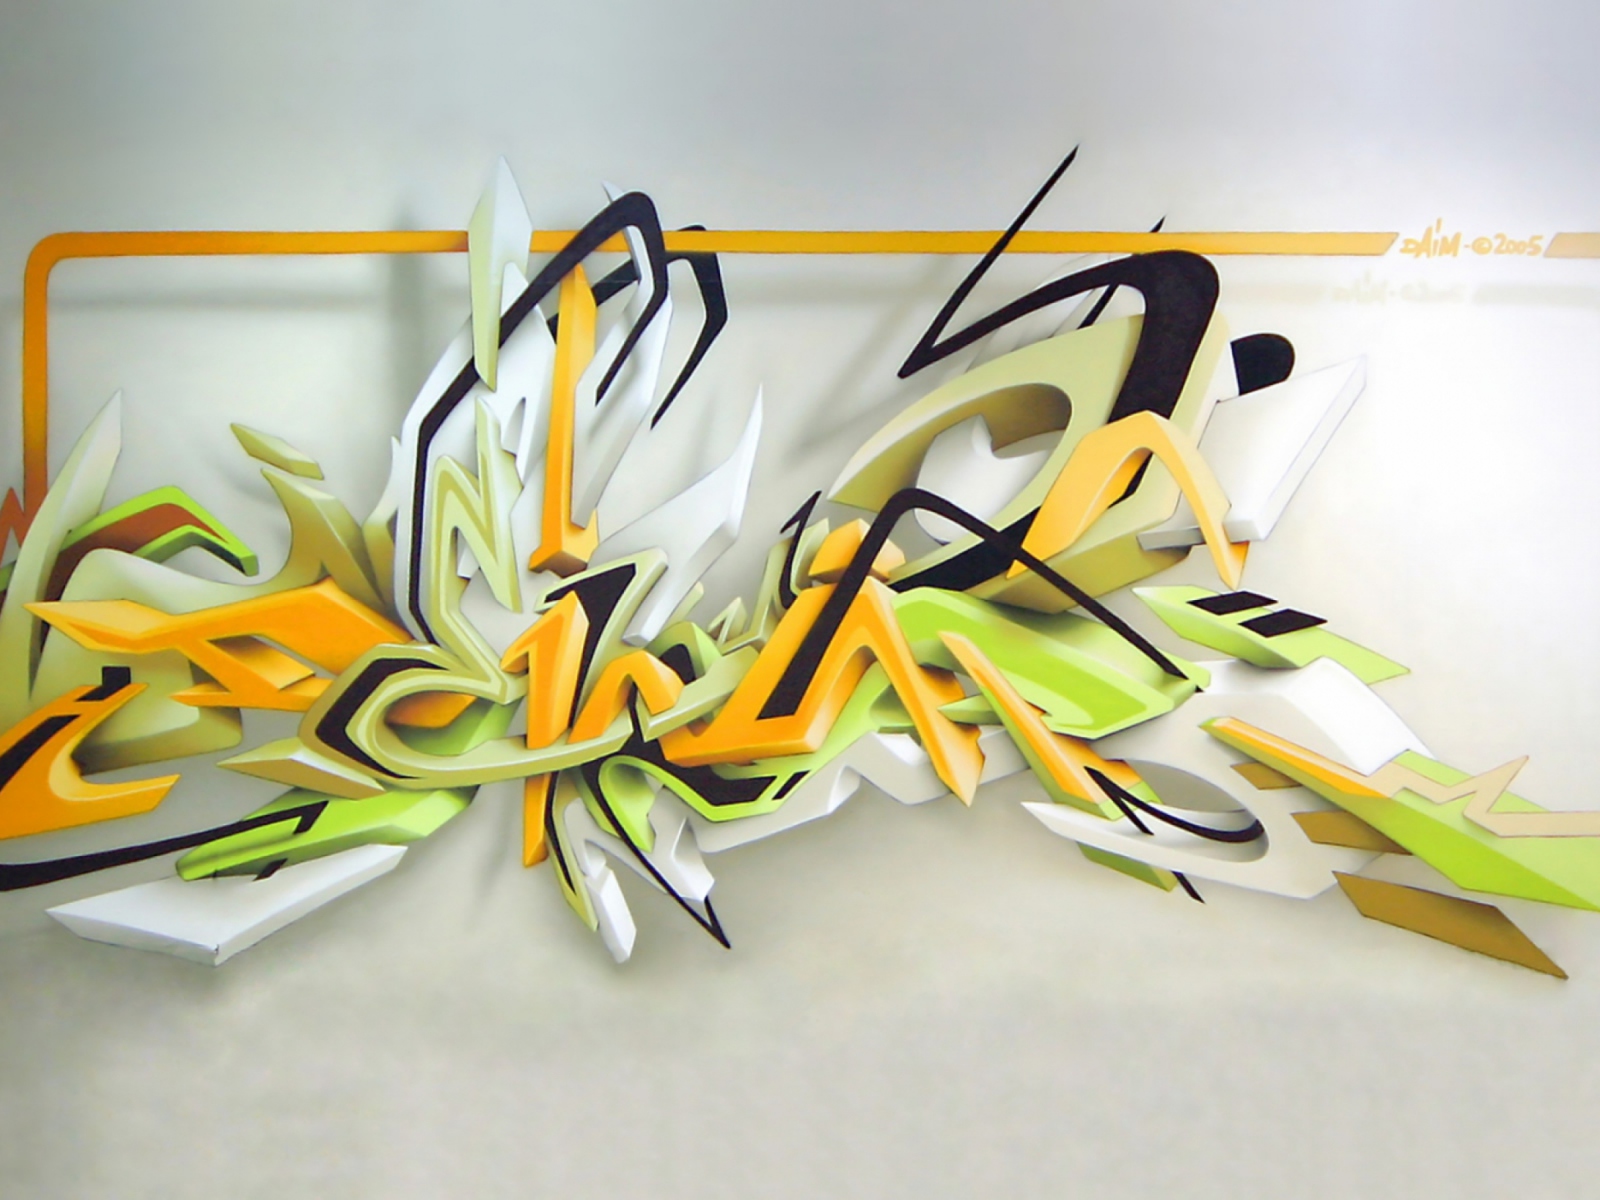 Fondo de pantalla Graffiti: Daim 3D 1600x1200